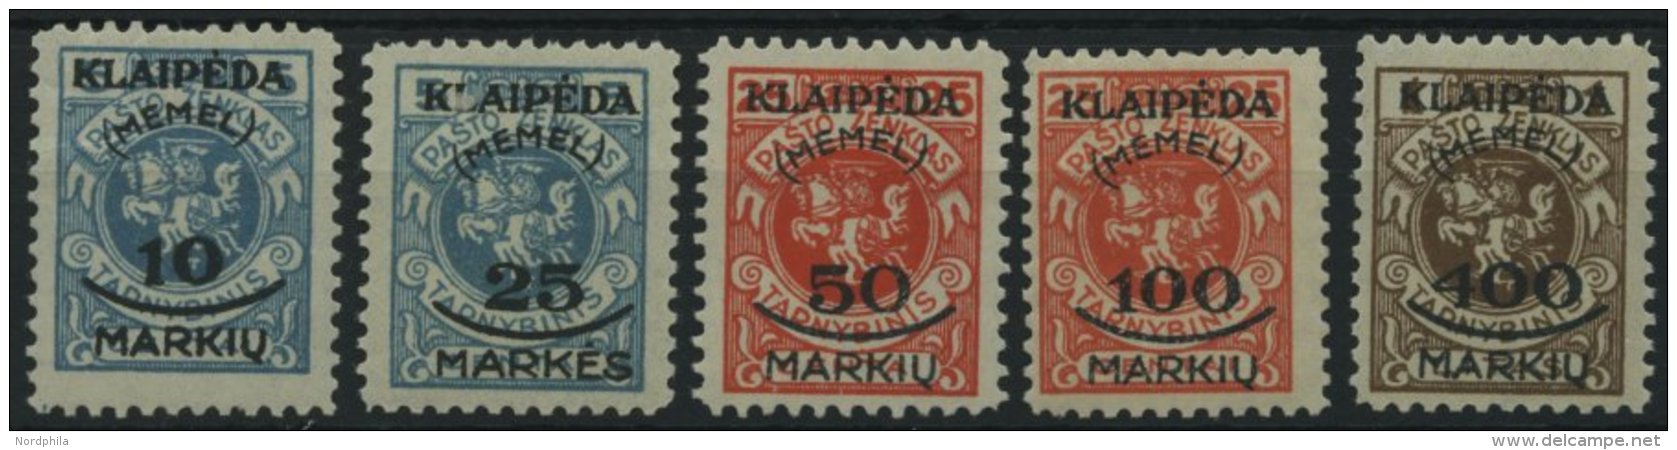 MEMELGEBIET 124-28 **, 1923, Staatsdruckerei Kowno, Postfrisch, 10 M. Kleine Gummiknitter Sonst Prachtsatz, Mi. 120.- - Memel (Klaipeda) 1923